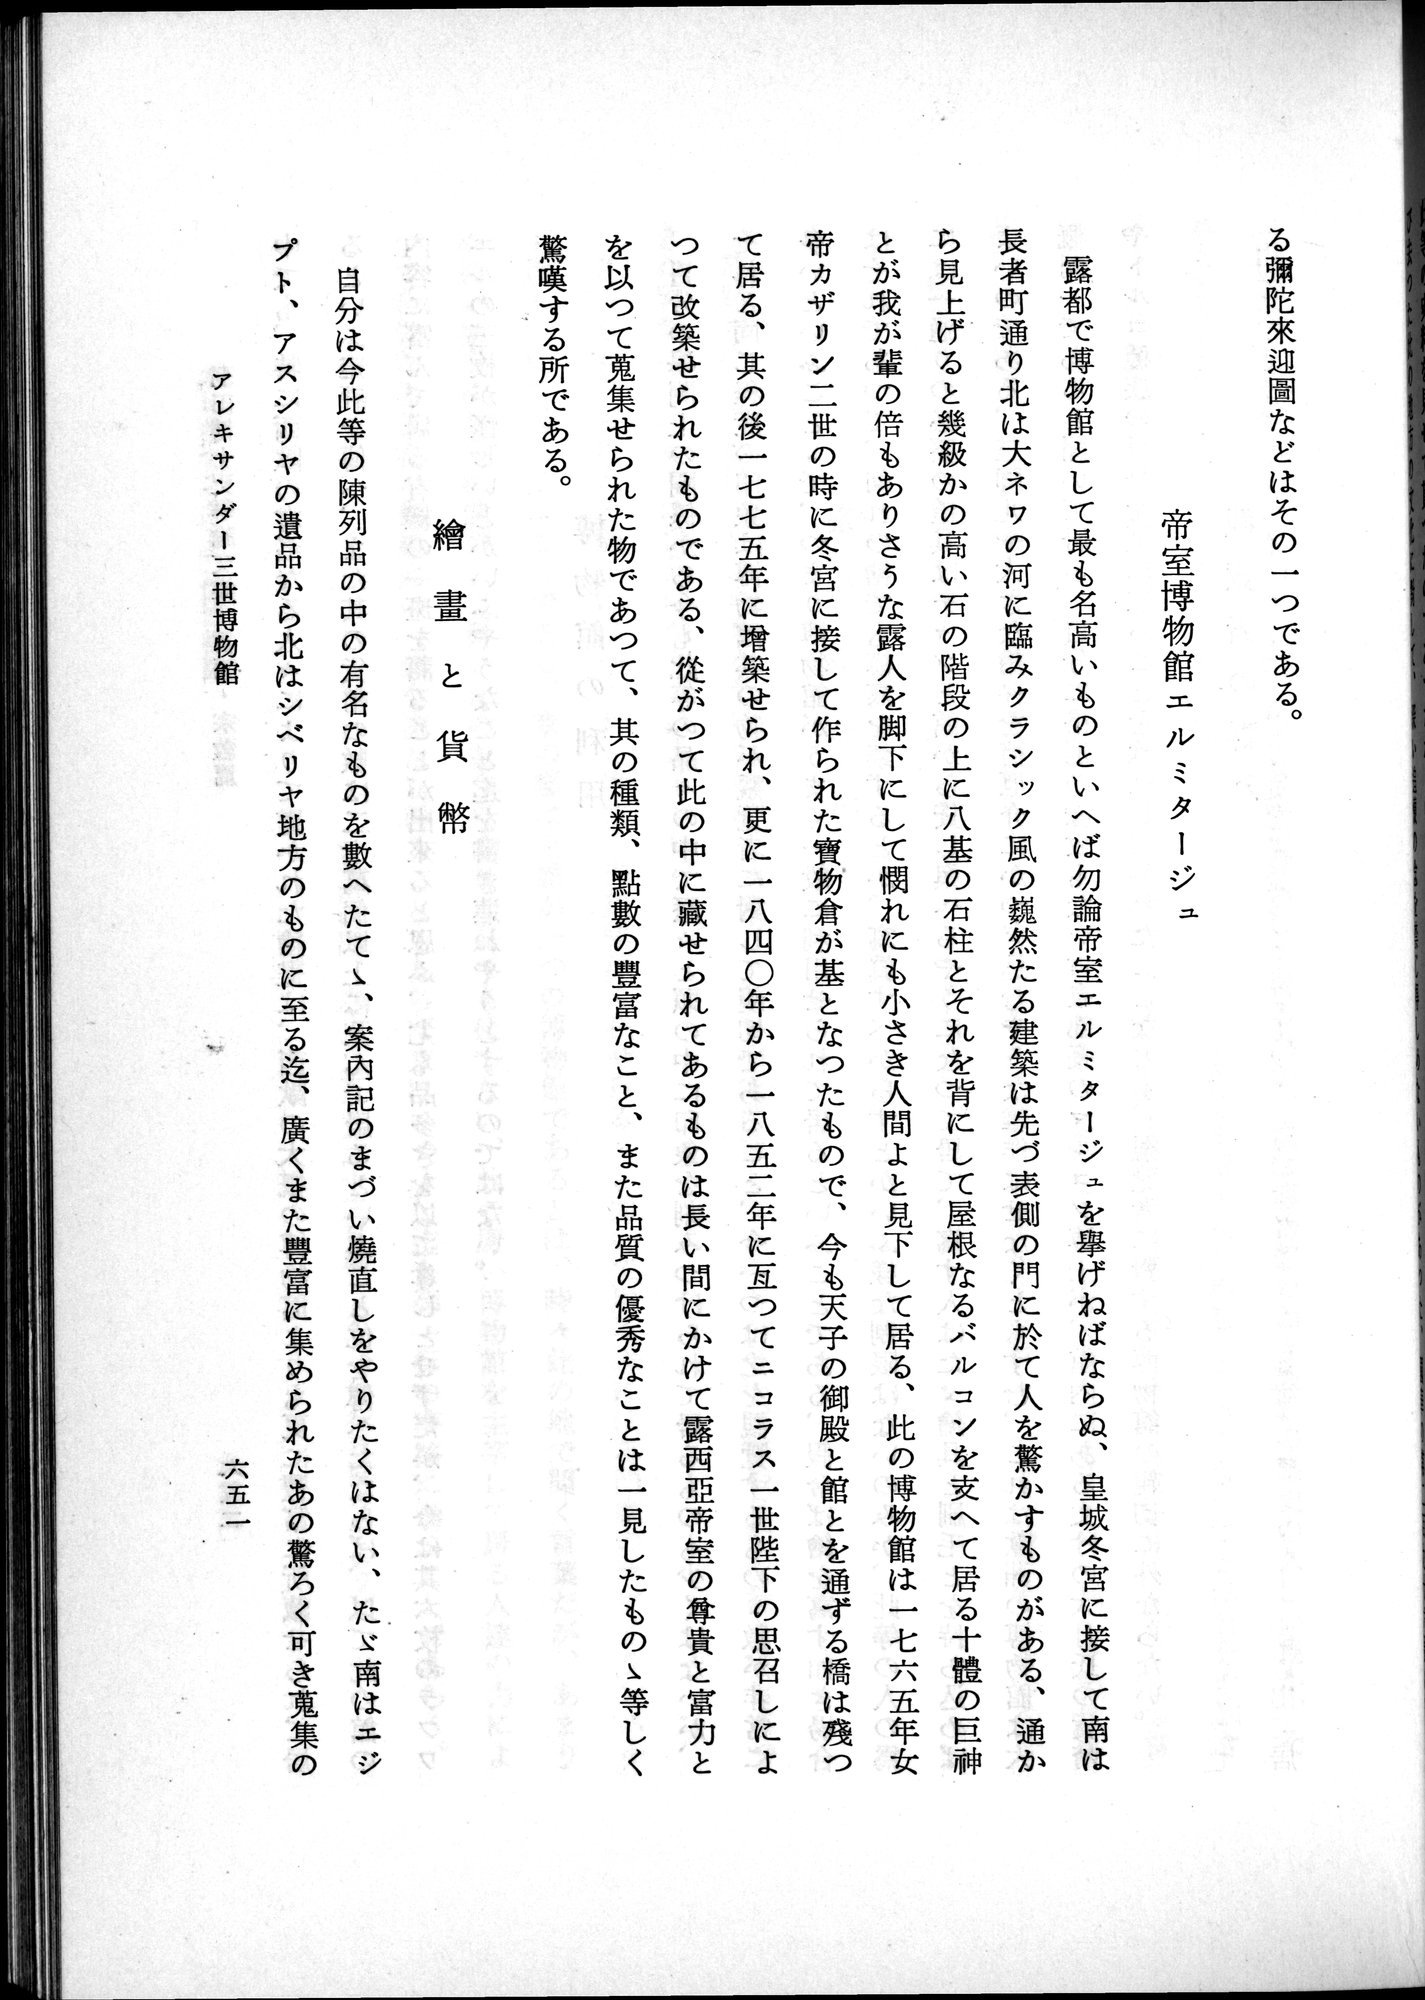 羽田博士史学論文集 : vol.2 / Page 715 (Grayscale High Resolution Image)